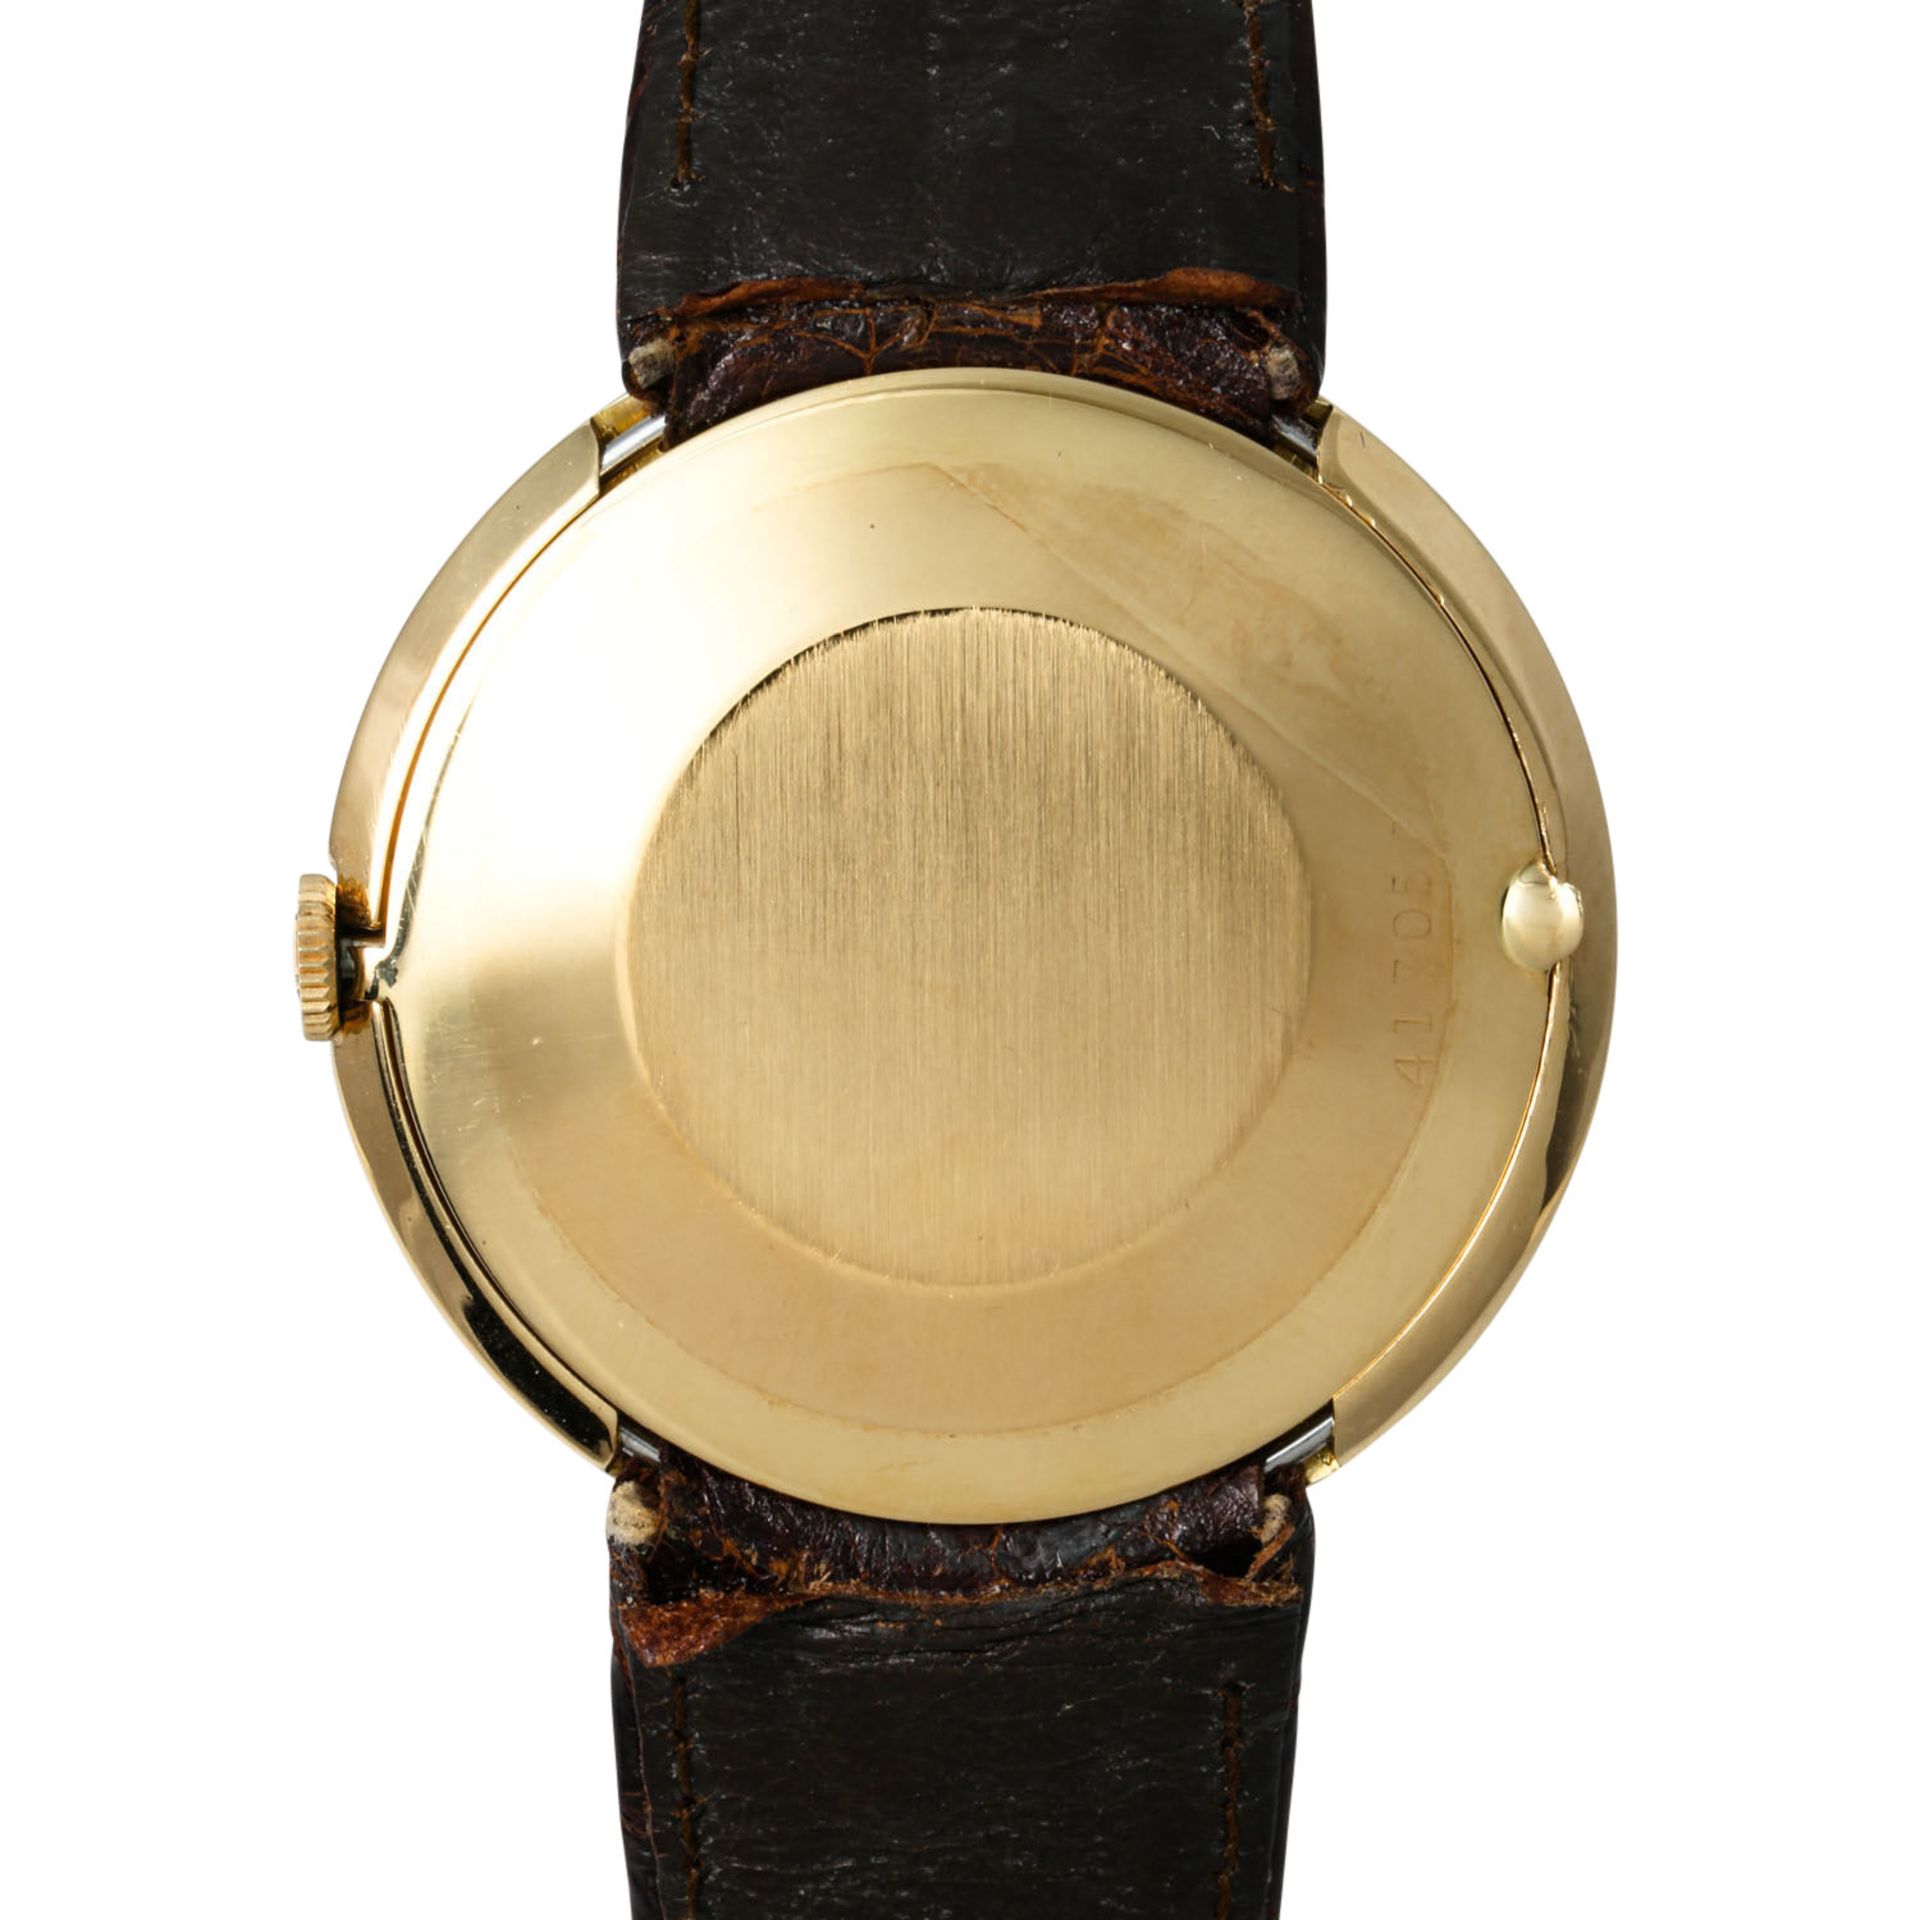 ROLEX Vintage Precision, Ref. 9522. Armbanduhr. Ca. 1960er Jahre. - Bild 2 aus 7